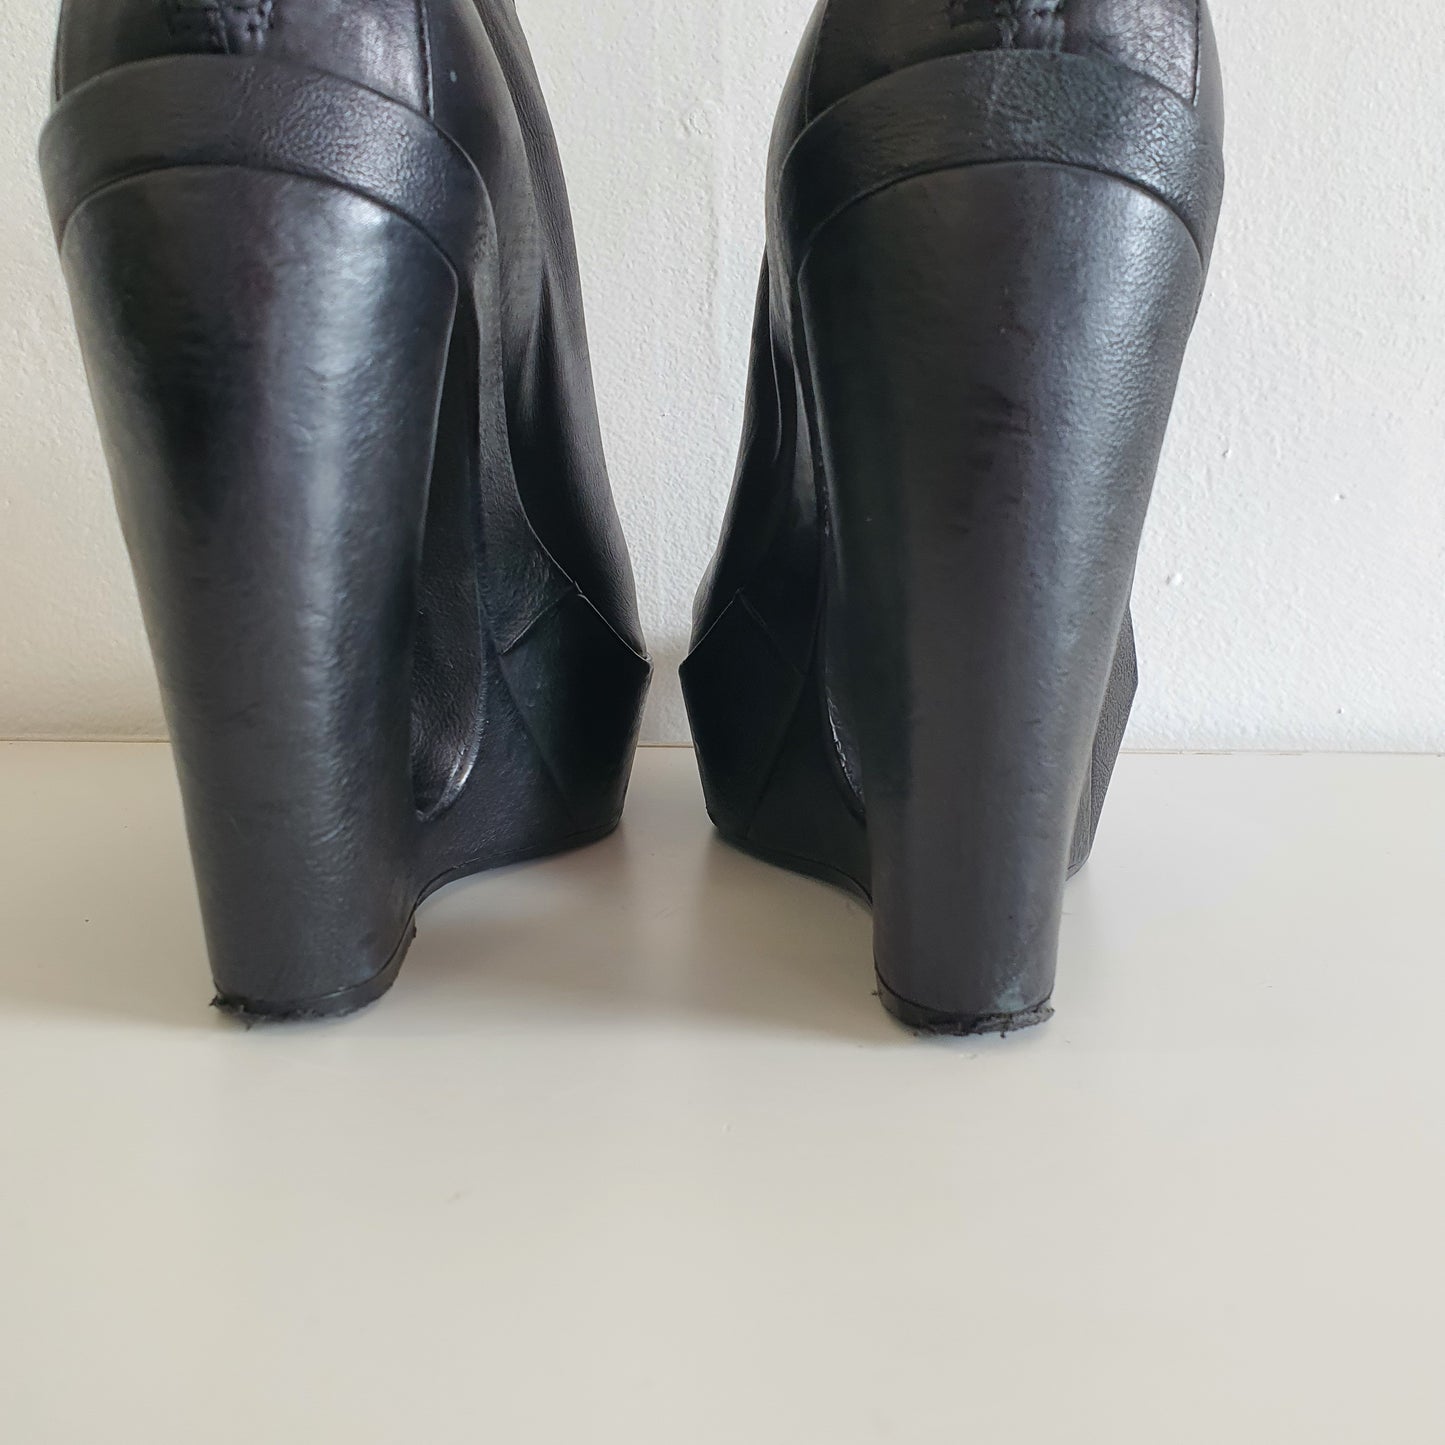 ANN DEMEULEMEESTER Cut-Out Curved Platform Boots (EU737/ UK4 / US7)